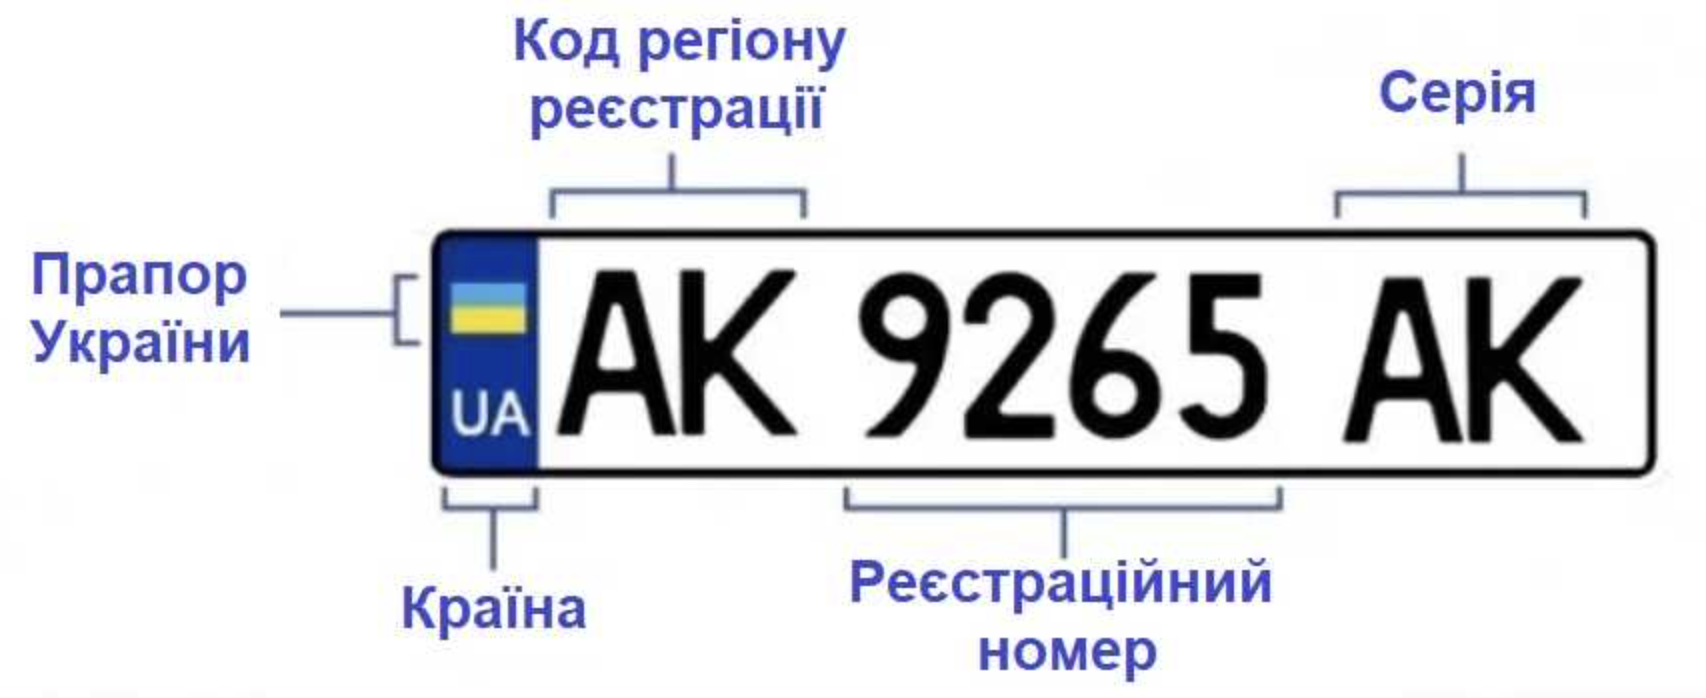 Автомобильные коды украины. Обозначение автомобильных номеров Украины. Номерные знаки регионов Украины. Автомобильные номера Украины по регионам расшифровка. Номера Украины автомобильные.